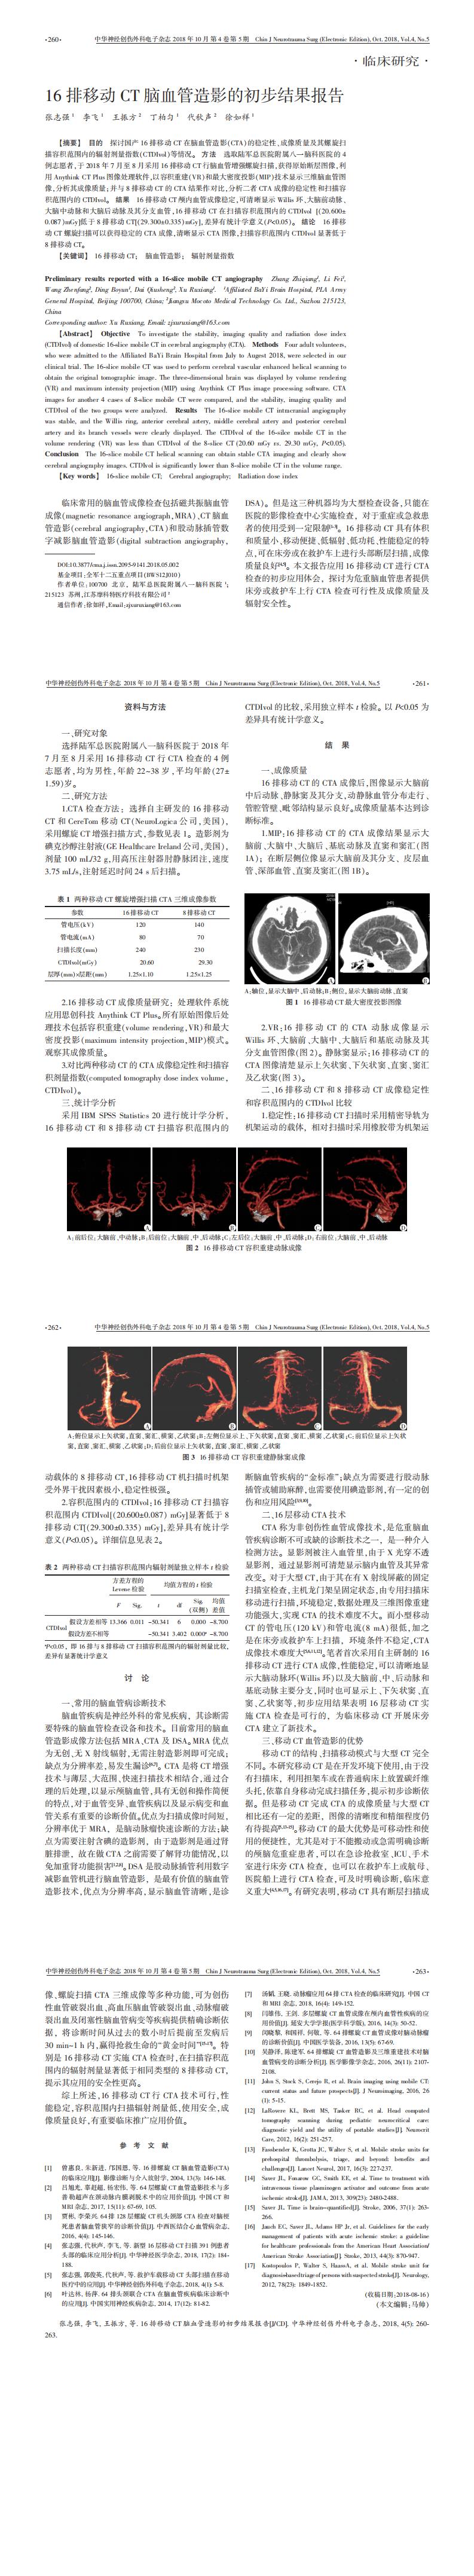 学术交流：16排移动CT脑血管造影初步临床应用